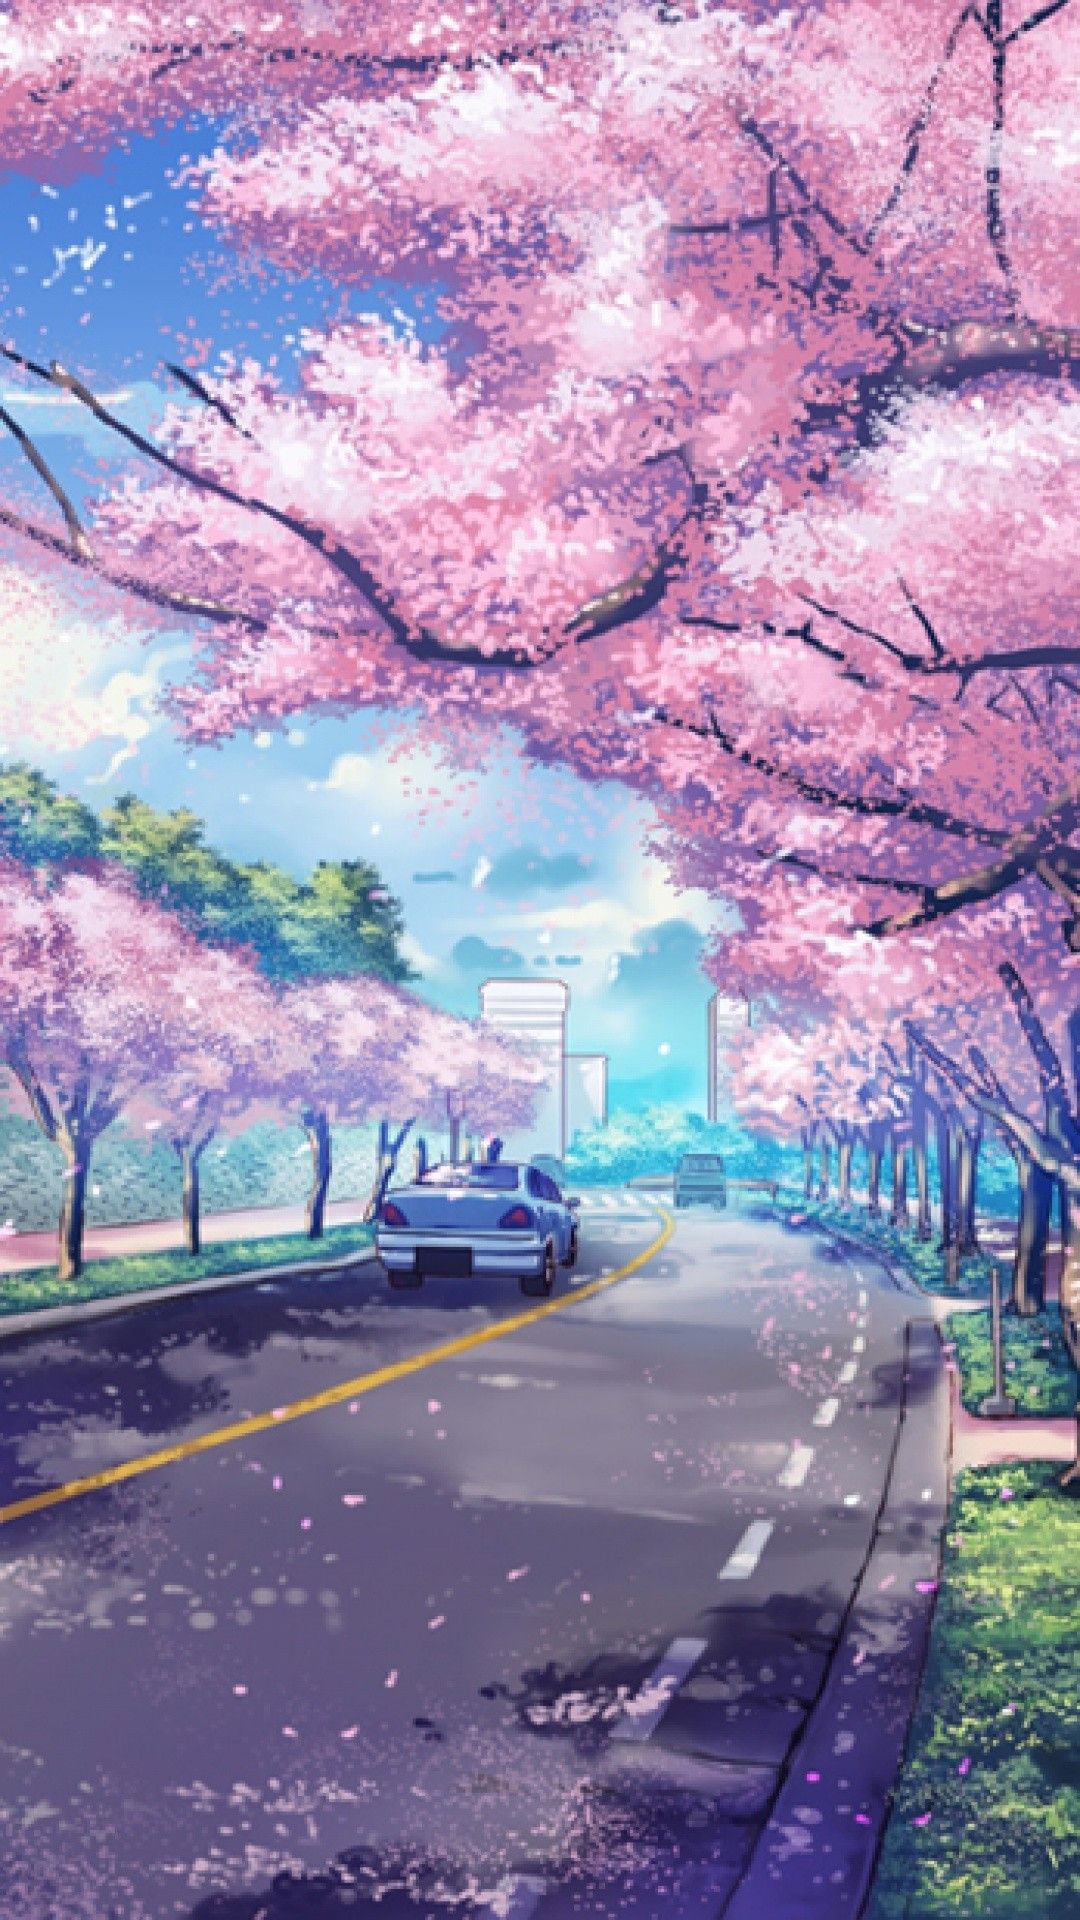 Hình nền Anime cảnh quan hoa anh khoan tuyệt đẹp mắt Full HD cho tới năng lượng điện thoại